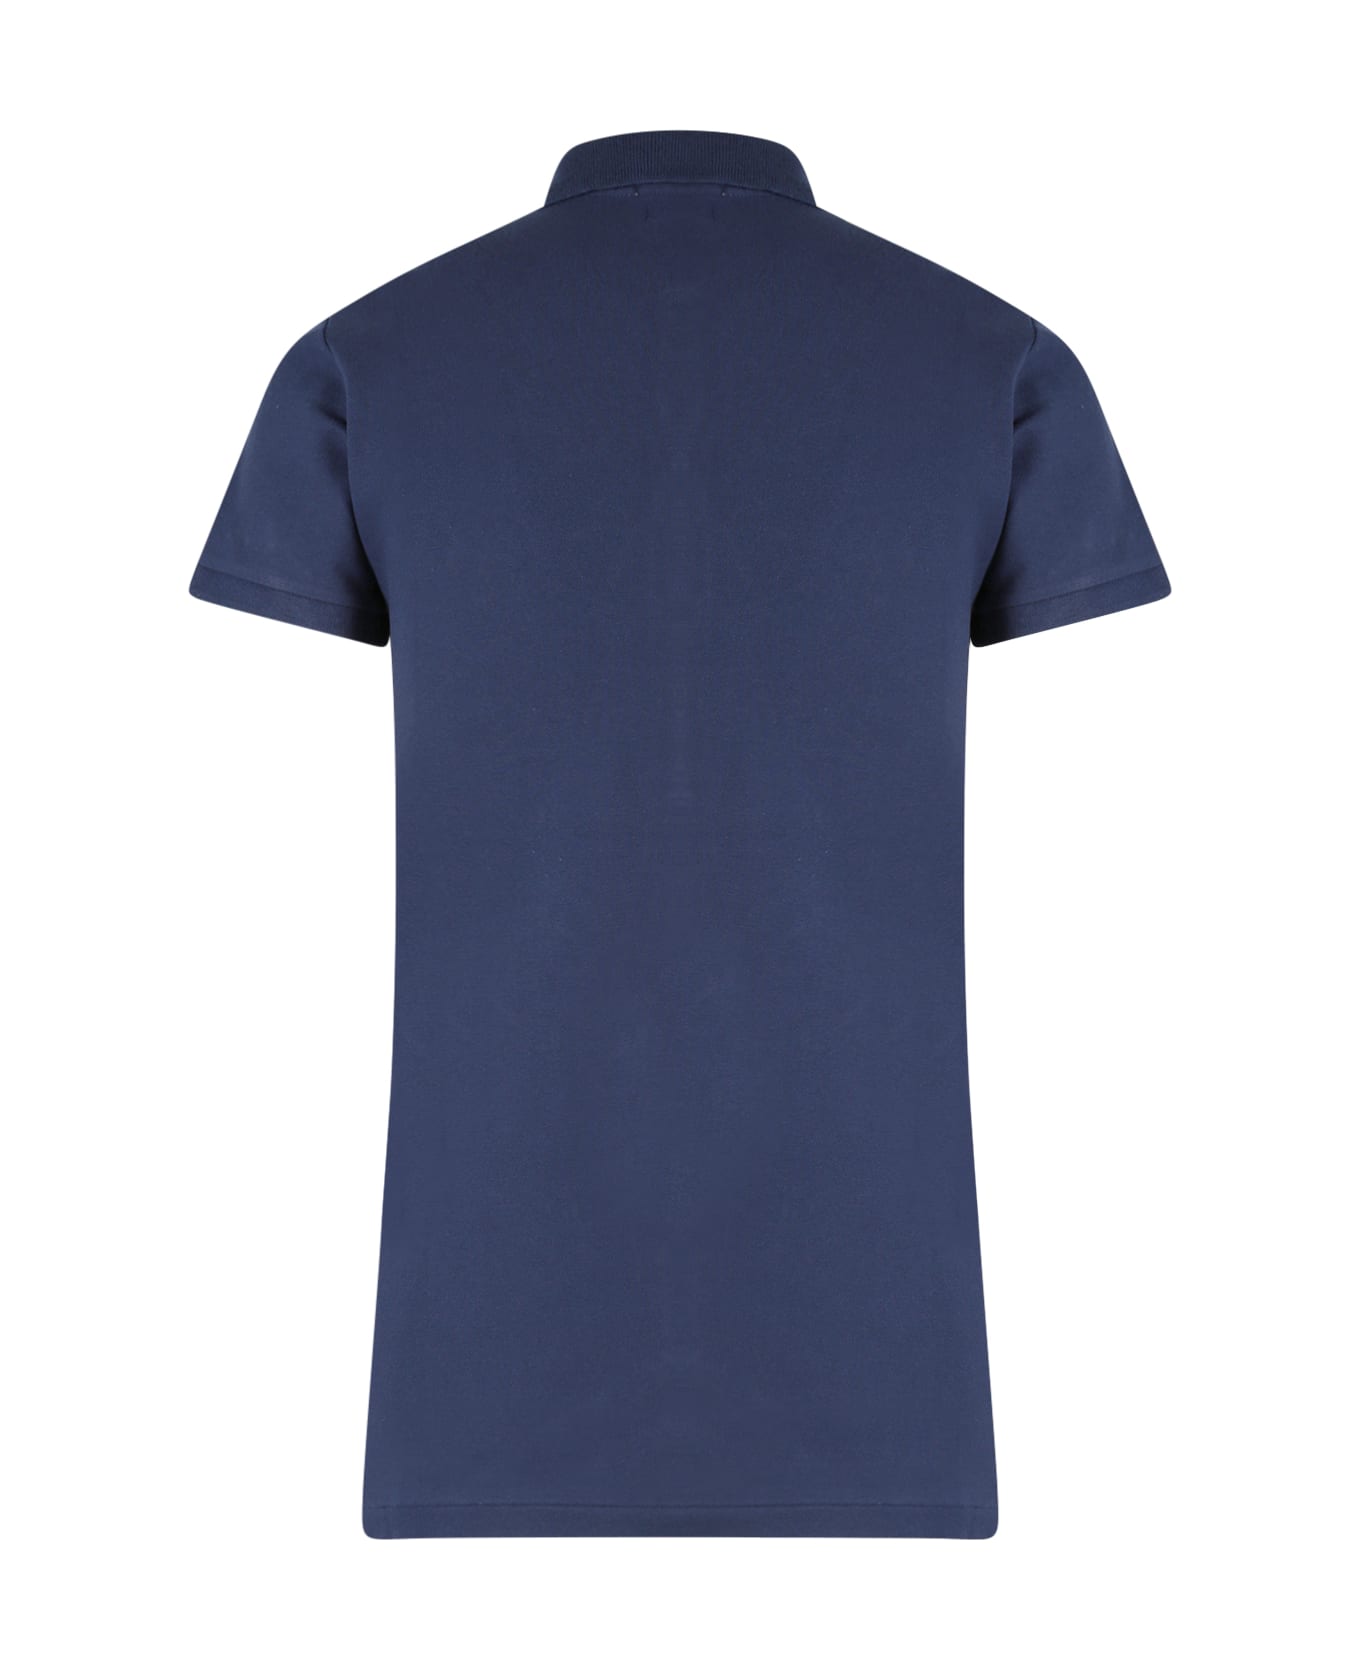 Ralph Lauren Polo Shirt - Newport Navy ポロシャツ